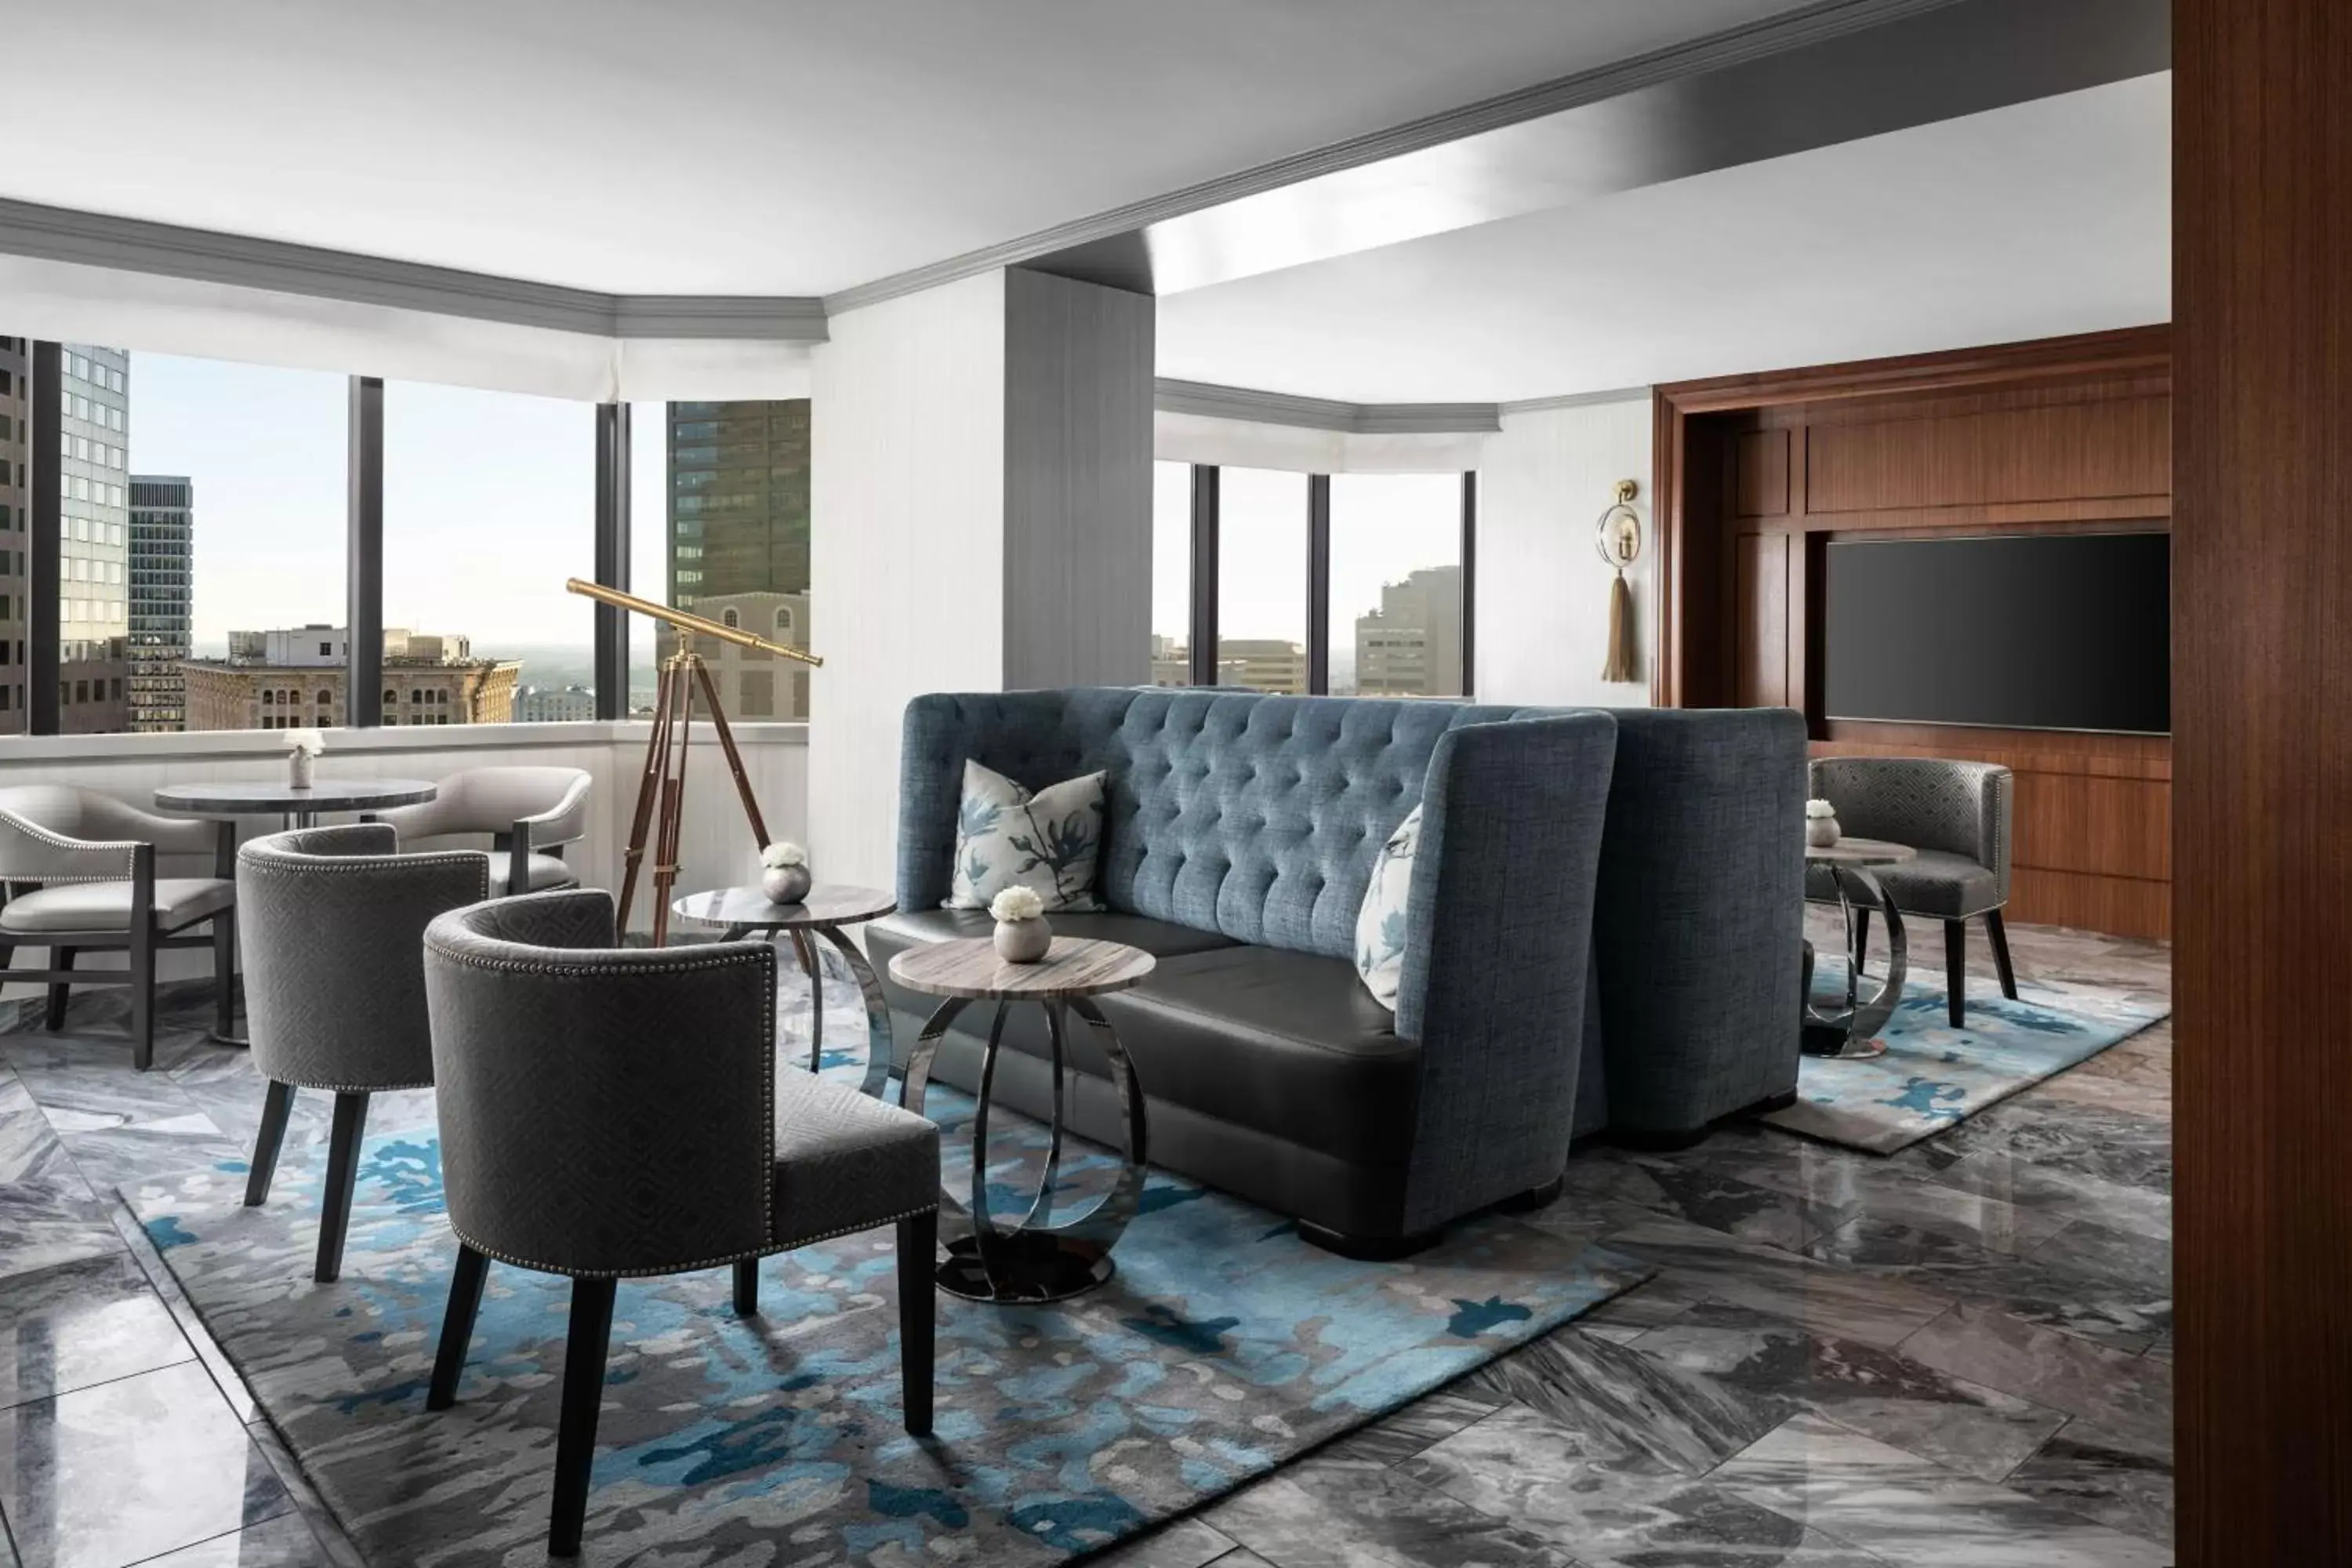 Lounge or bar, Seating Area in The Ritz-Carlton Atlanta